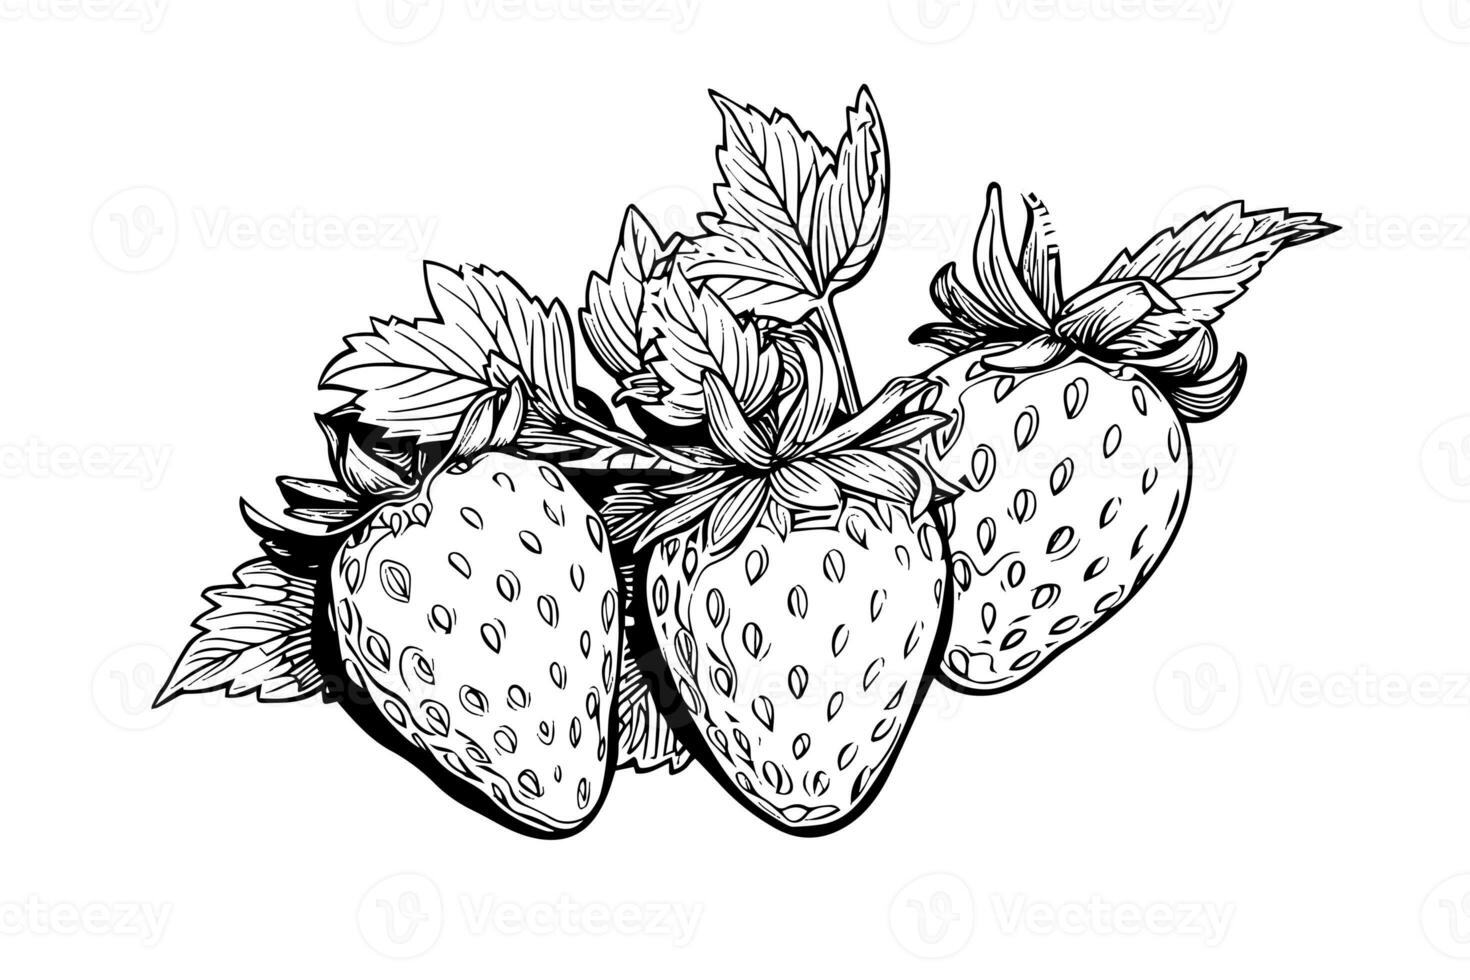 jordgubb i gravyr stil. design element för affisch, kort, baner, tecken. vektor illustration foto